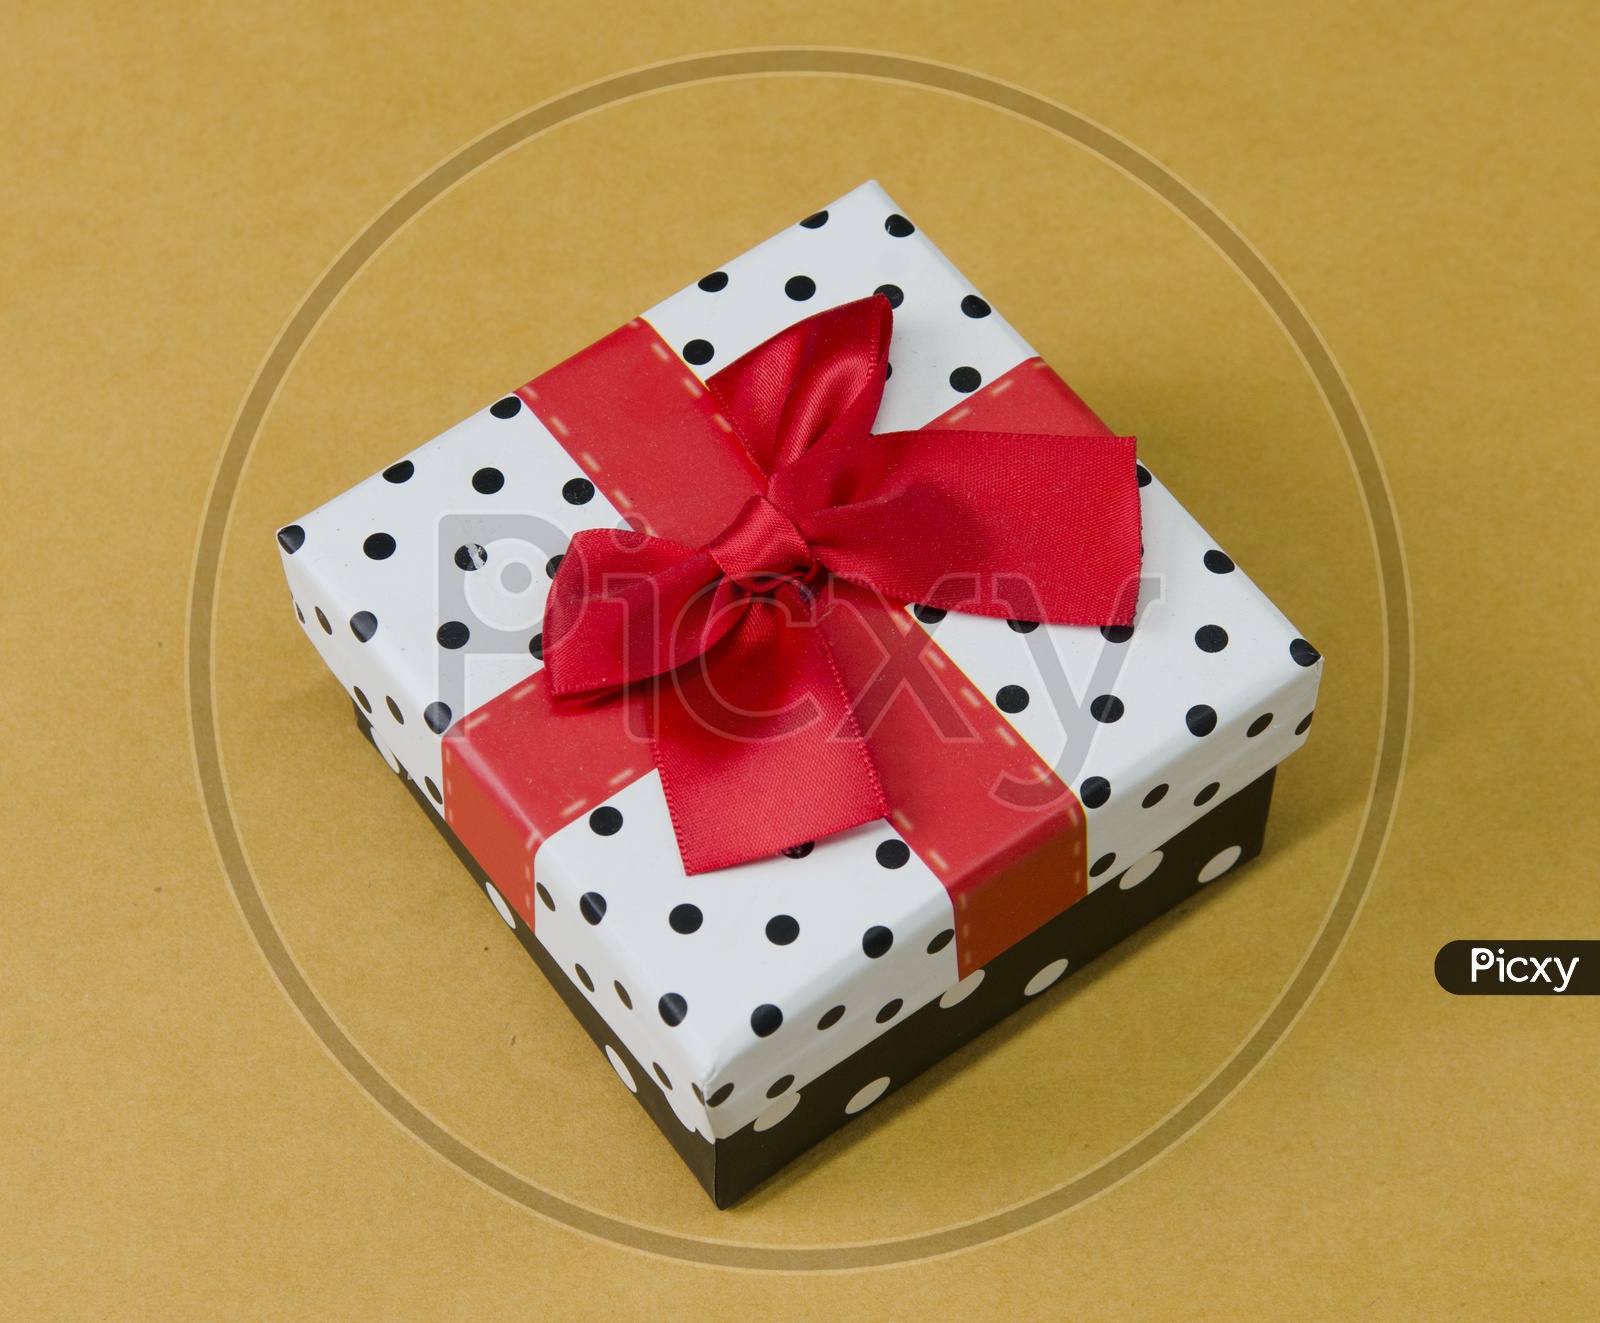 A Polka dots gift box with ribbon